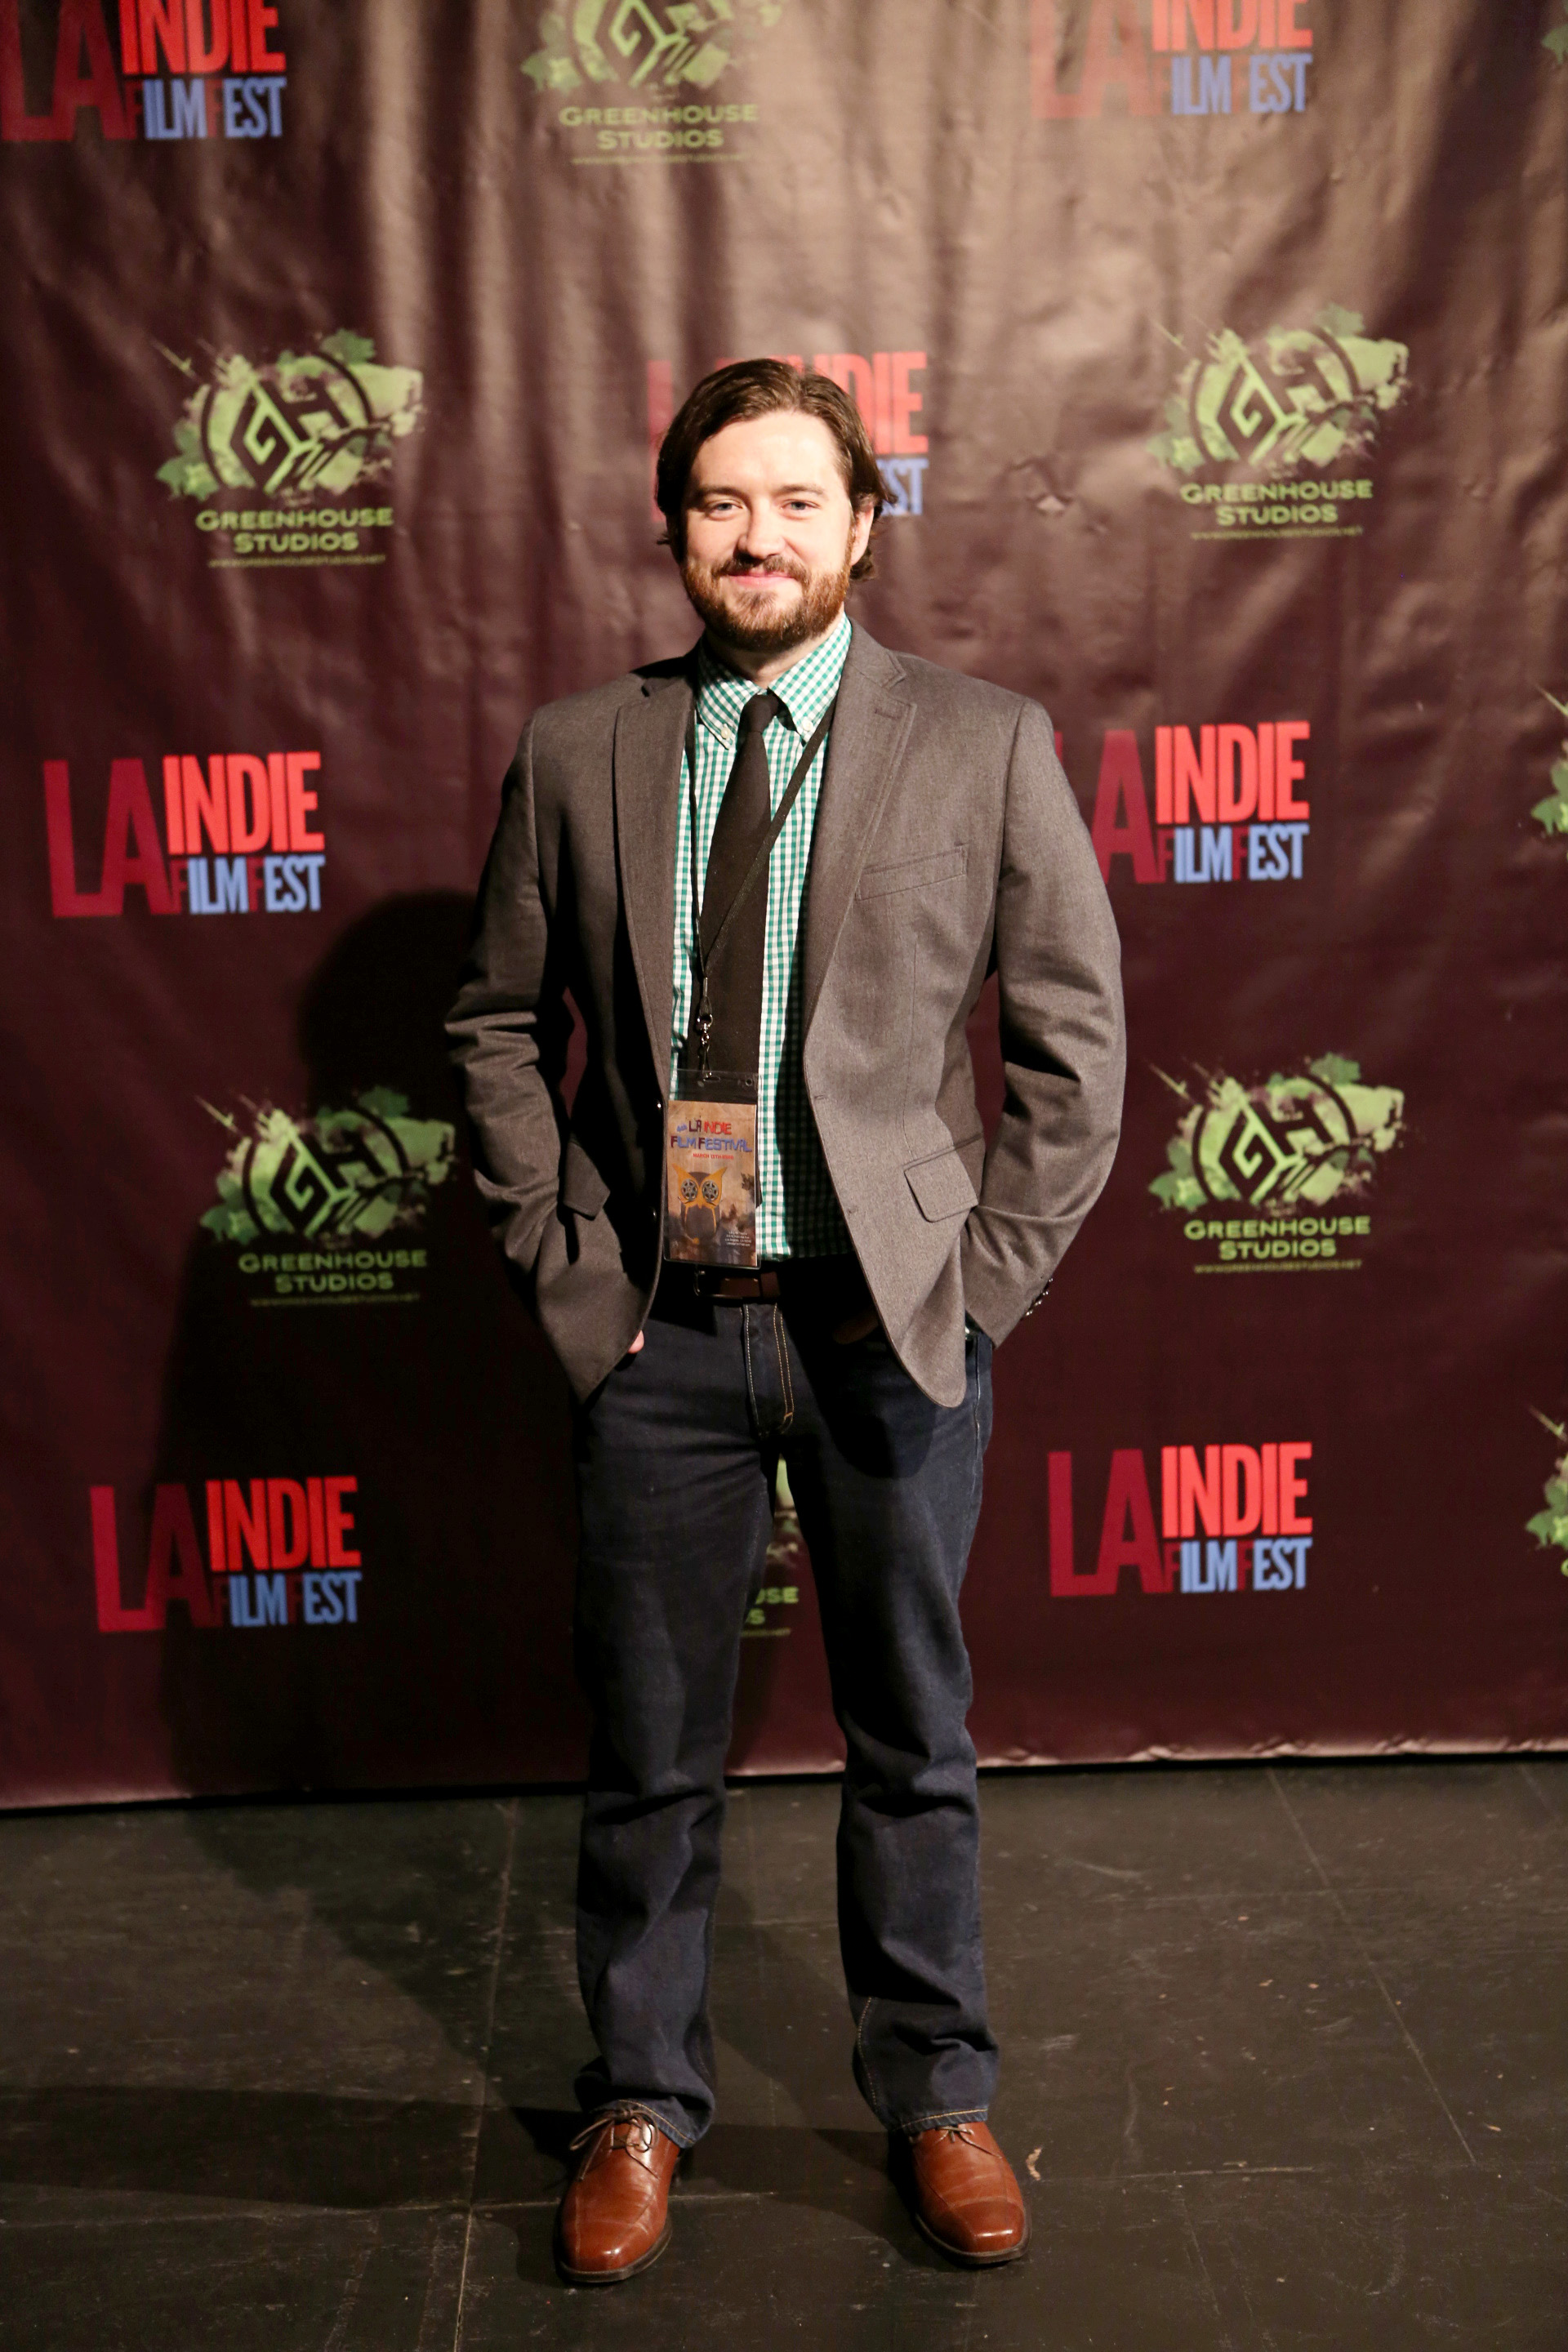 Adam Rosenbaum at the LA Indie Film Fest for the premiere of his short film, 